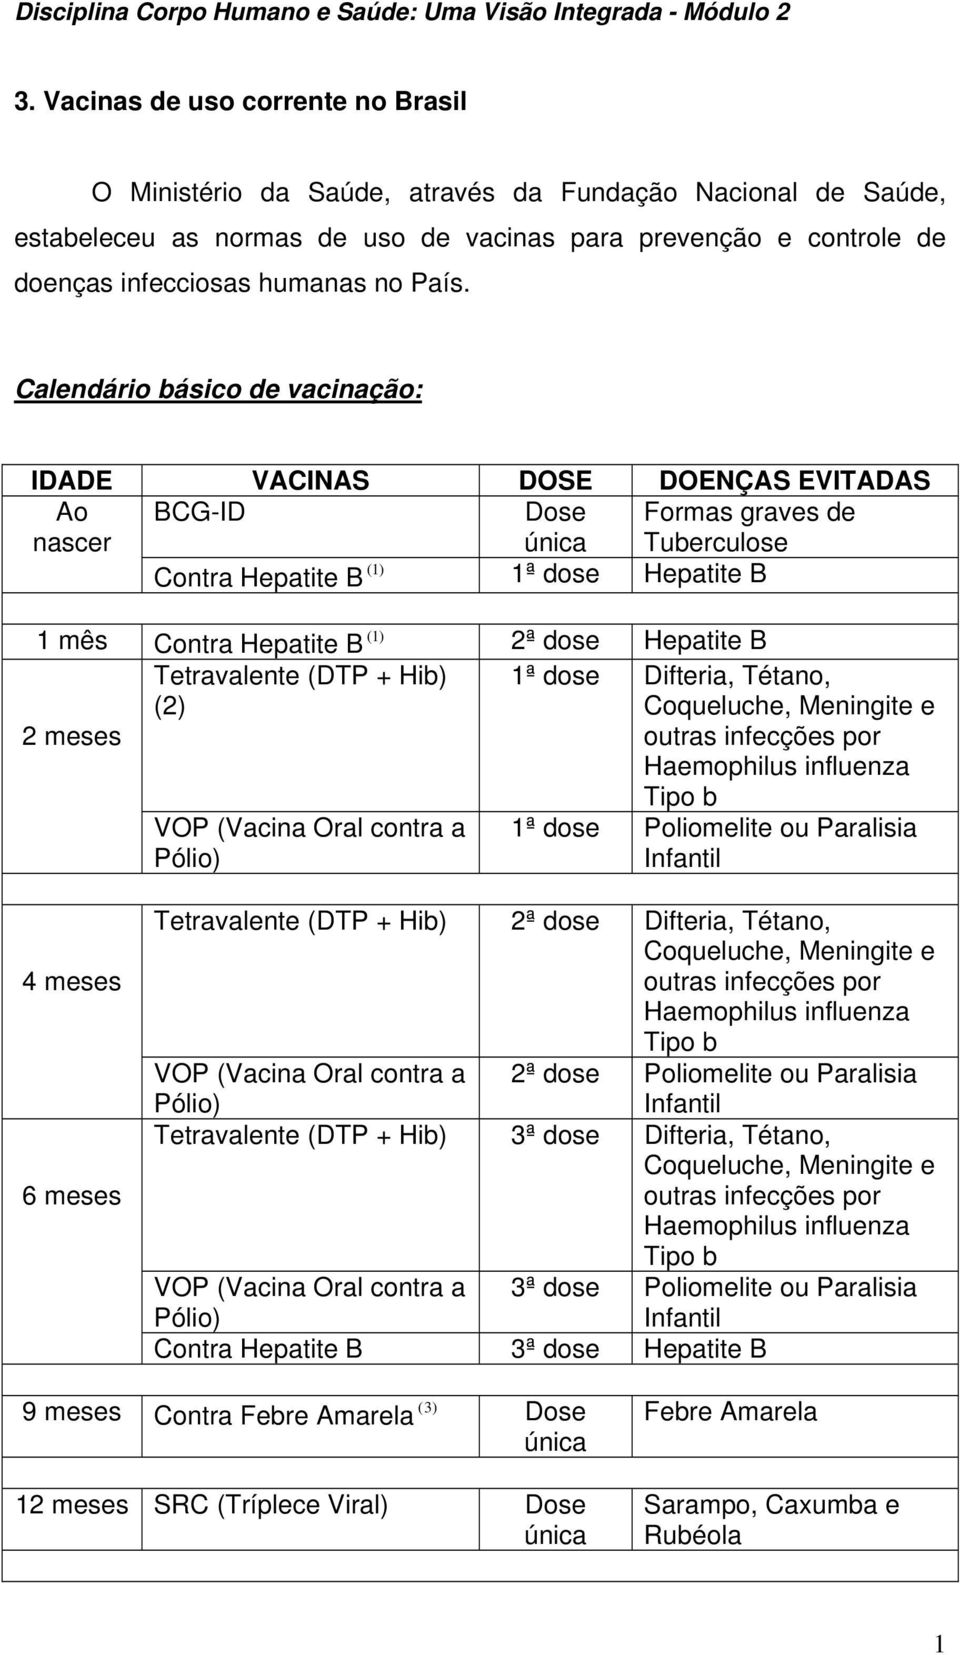 dose Hepatite B 2 meses Tetravalente (DTP + Hib) (2) VOP (Vacina Oral contra a Pólio) 1ª dose Difteria, Tétano, Coqueluche, Meningite e outras infecções por Haemophilus influenza Tipo b 1ª dose